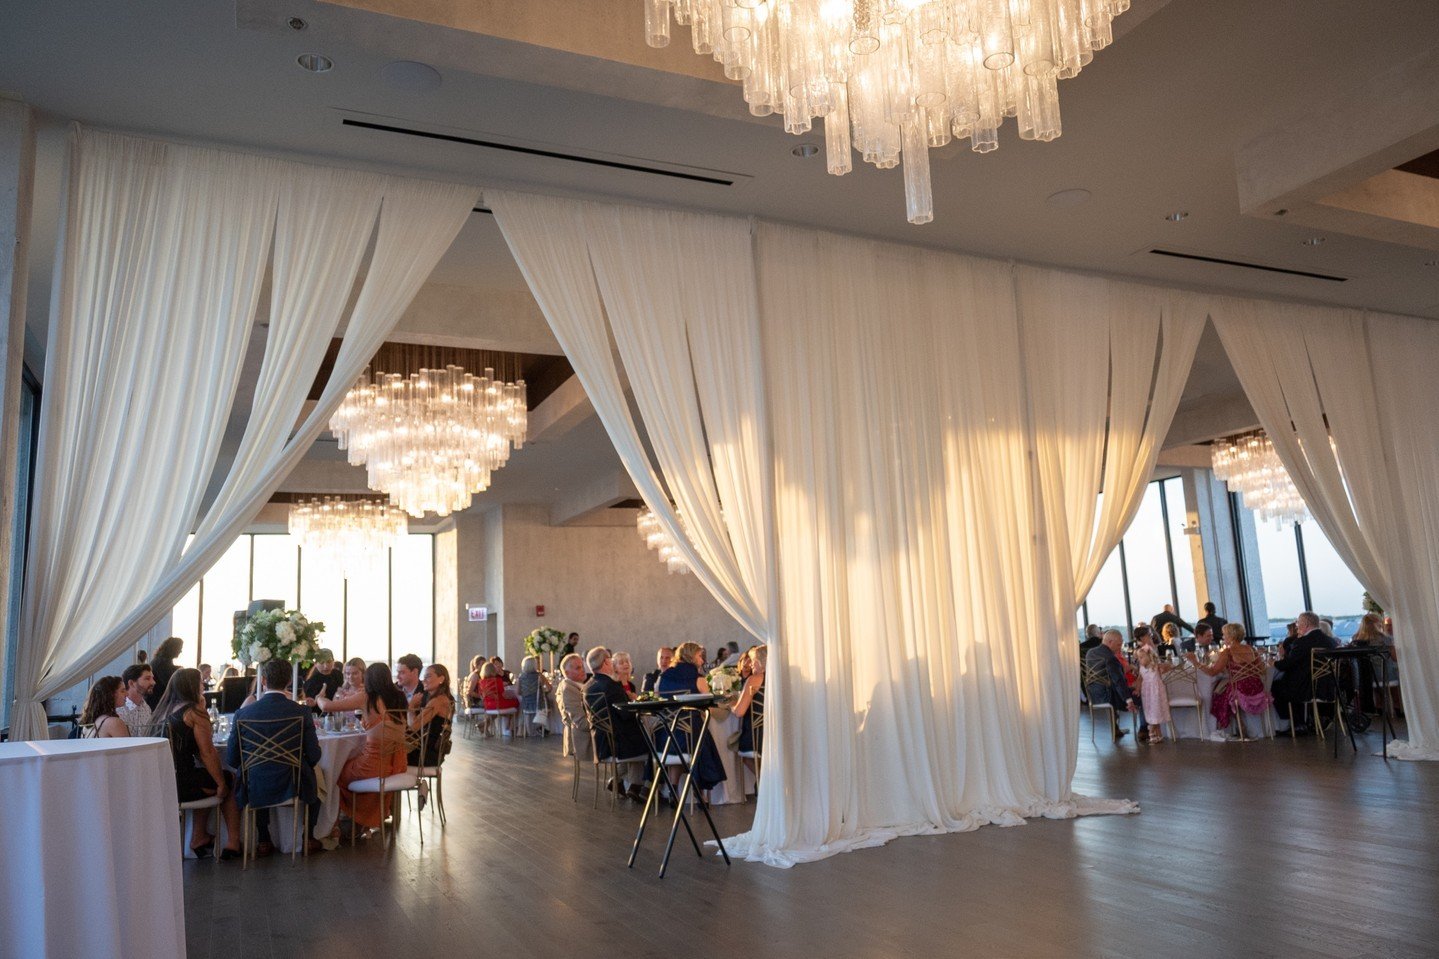 The gathering place 🥂✨

📸 @art.by.solly
.
.
.
#chicagowedding #RosemontIL #weddingdecor #weddingdesign #weddinginspo #illinoisweddings #chicagolandwedding #eventdecor #eventdesign #realwedding #weddinginspiration #chicagowedding #mychicagopix #wedd